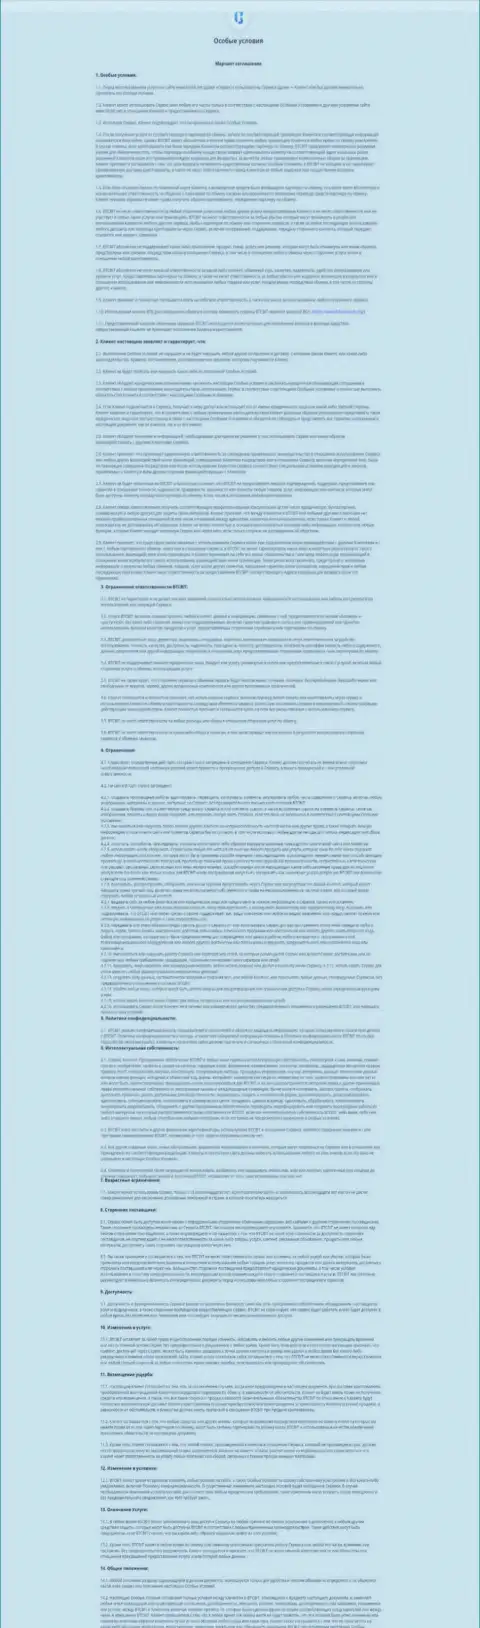 Условия мерчант соглашения организации BTCBit Sp. z.o.o. с описанием гарантий и обязанностей сторон подписывающих договор